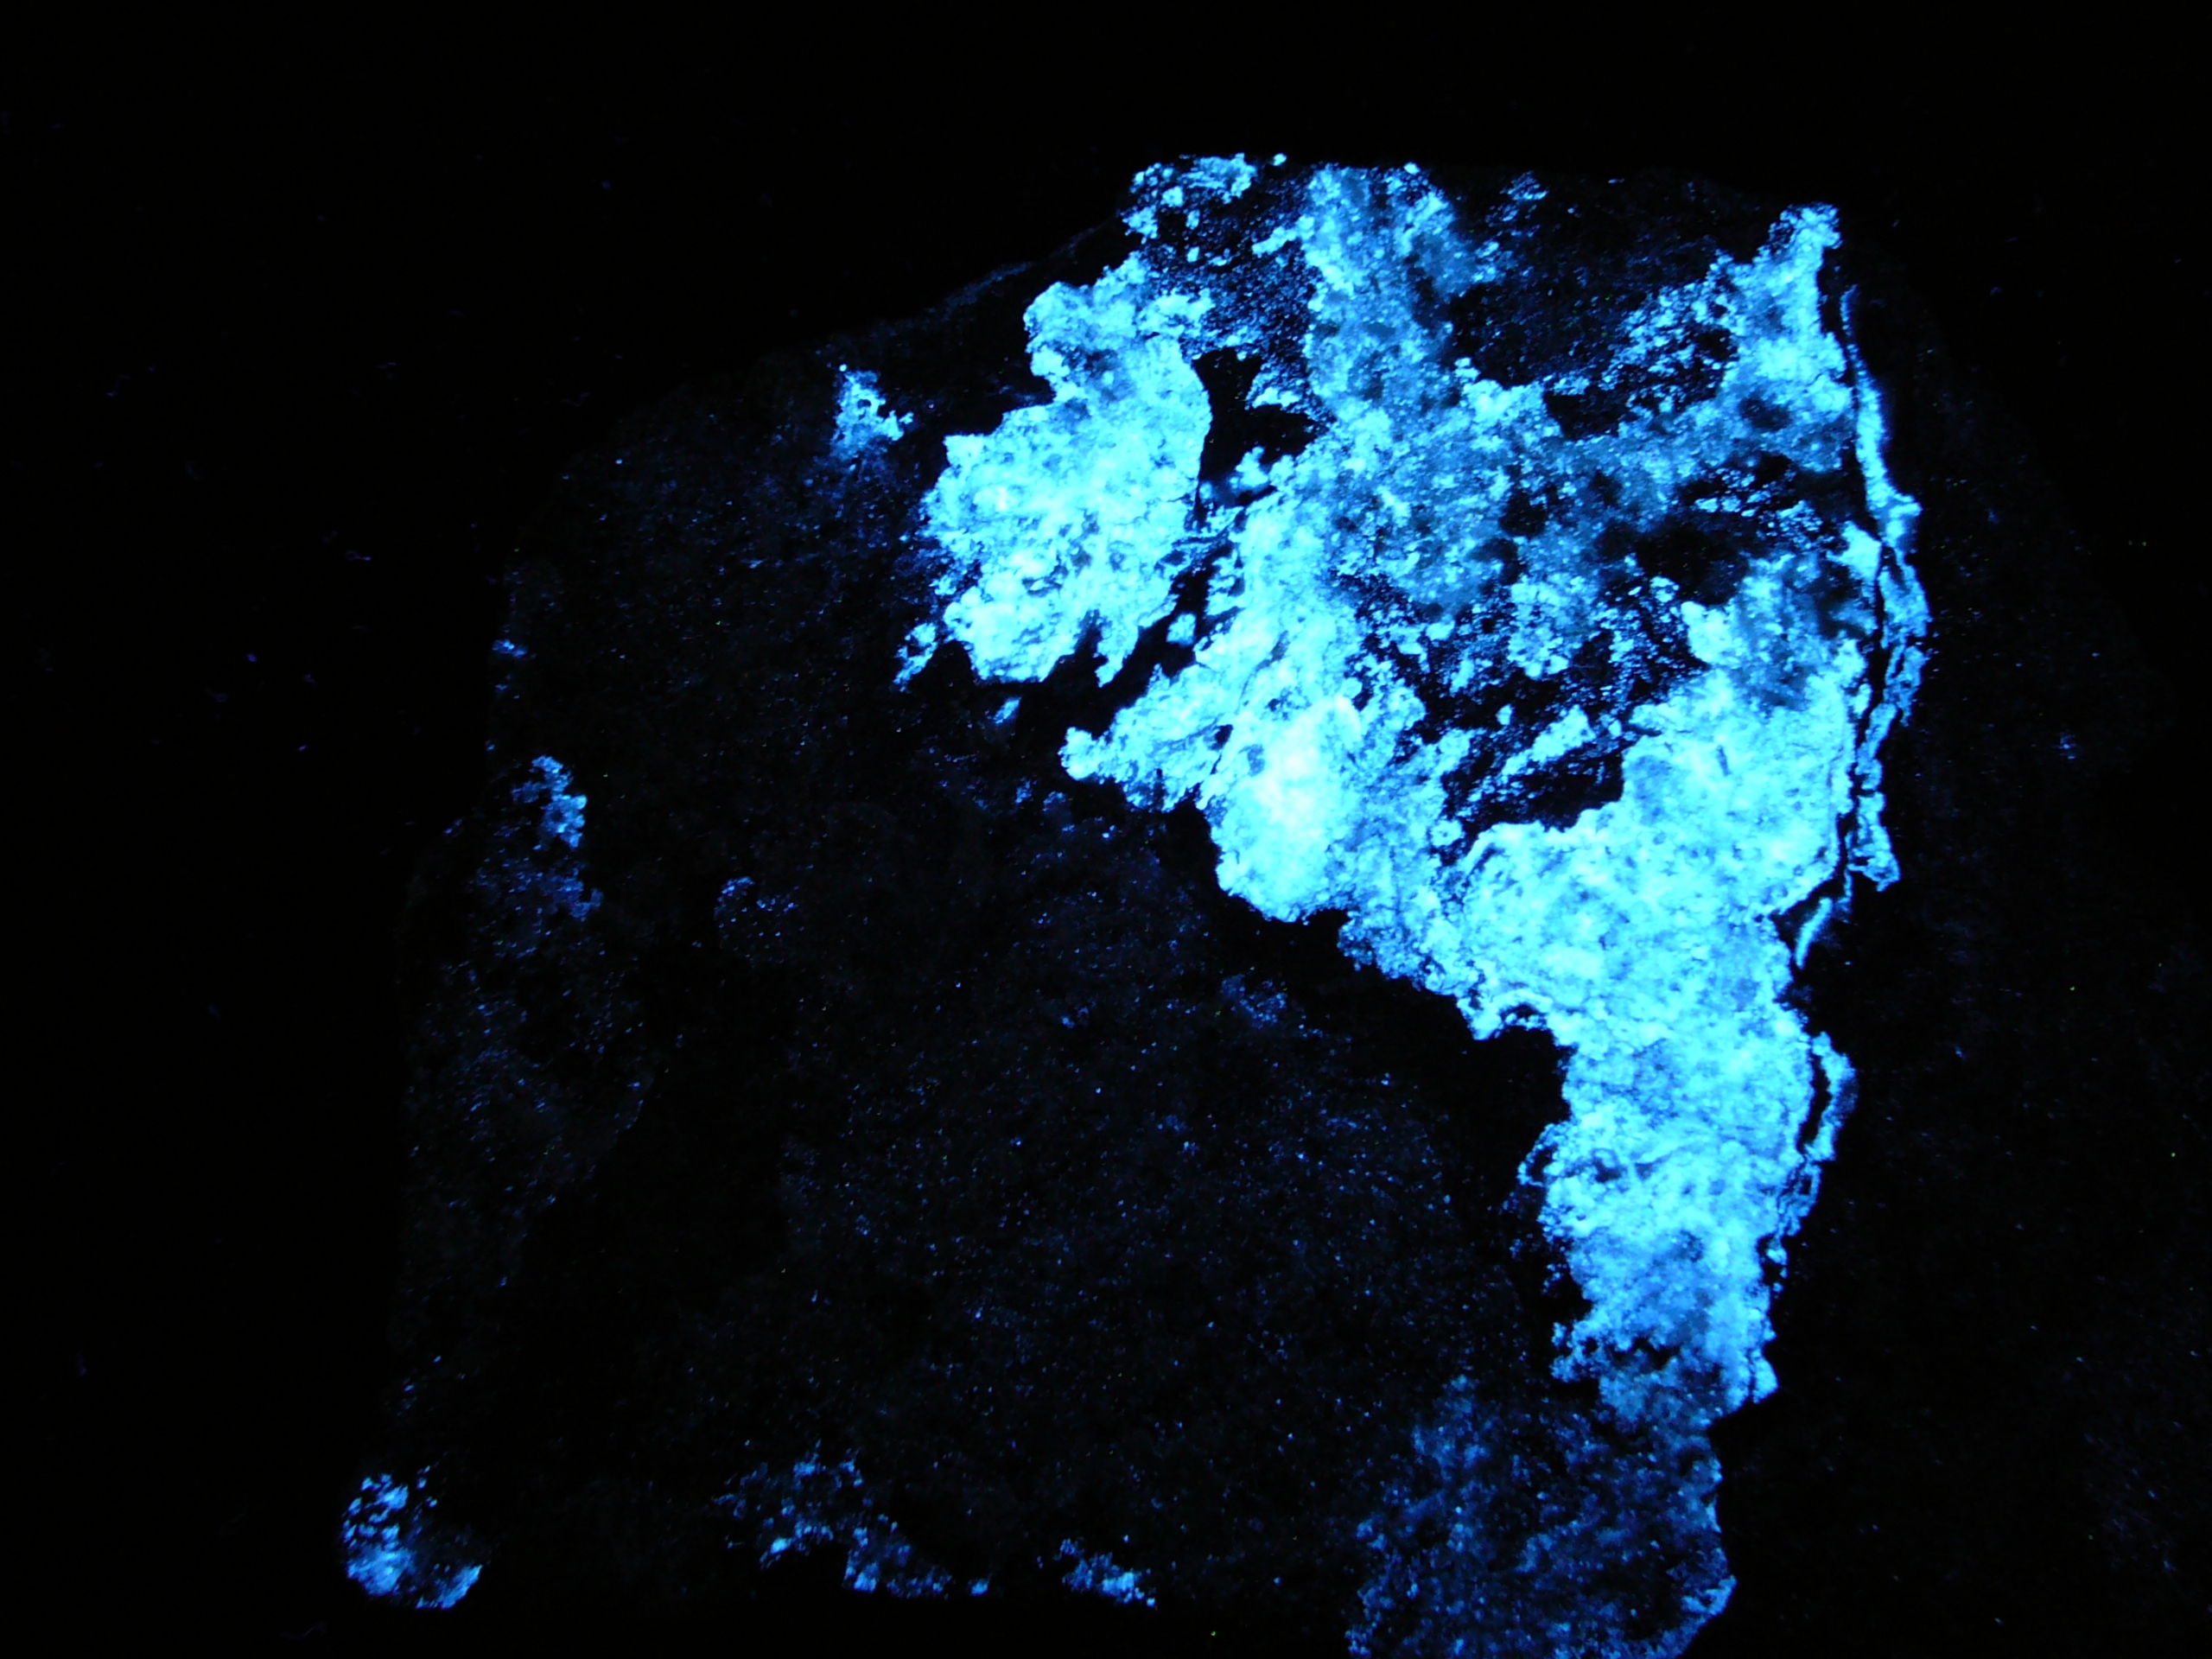 Fluorescent scheelite